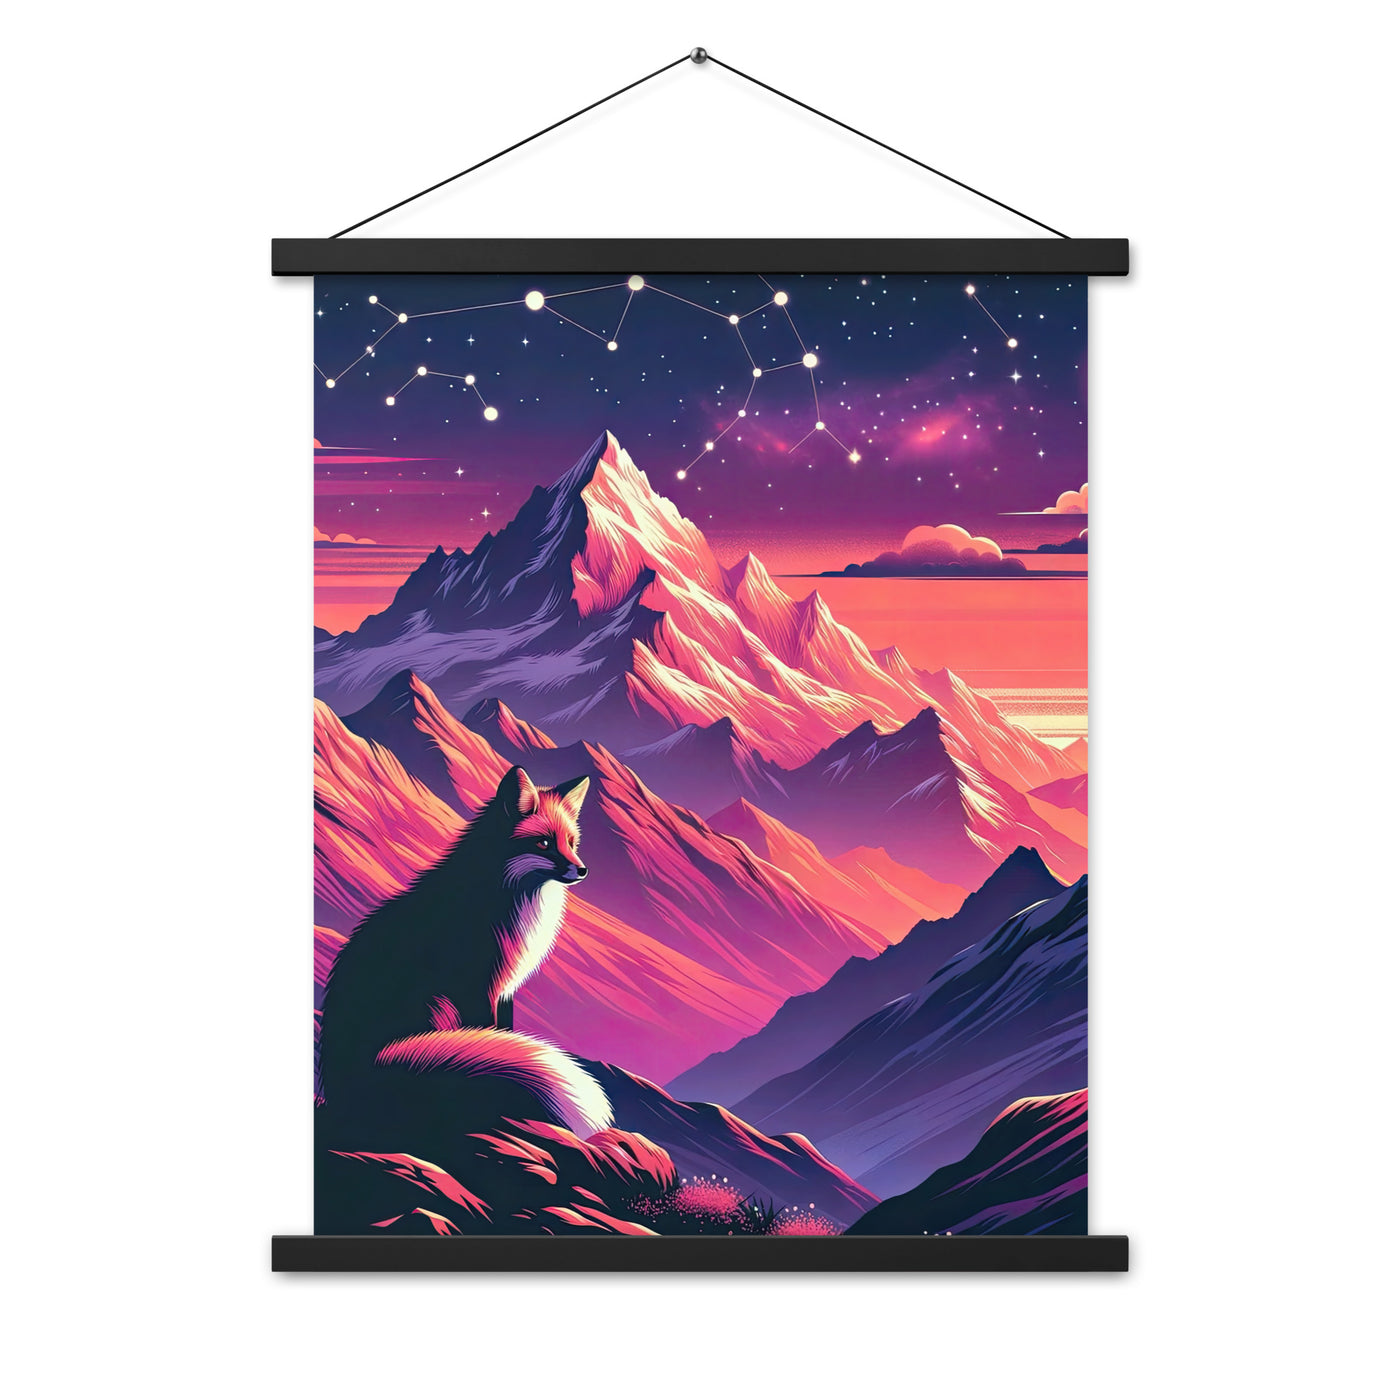 Fuchs im dramatischen Sonnenuntergang: Digitale Bergillustration in Abendfarben - Premium Poster mit Aufhängung camping xxx yyy zzz 45.7 x 61 cm